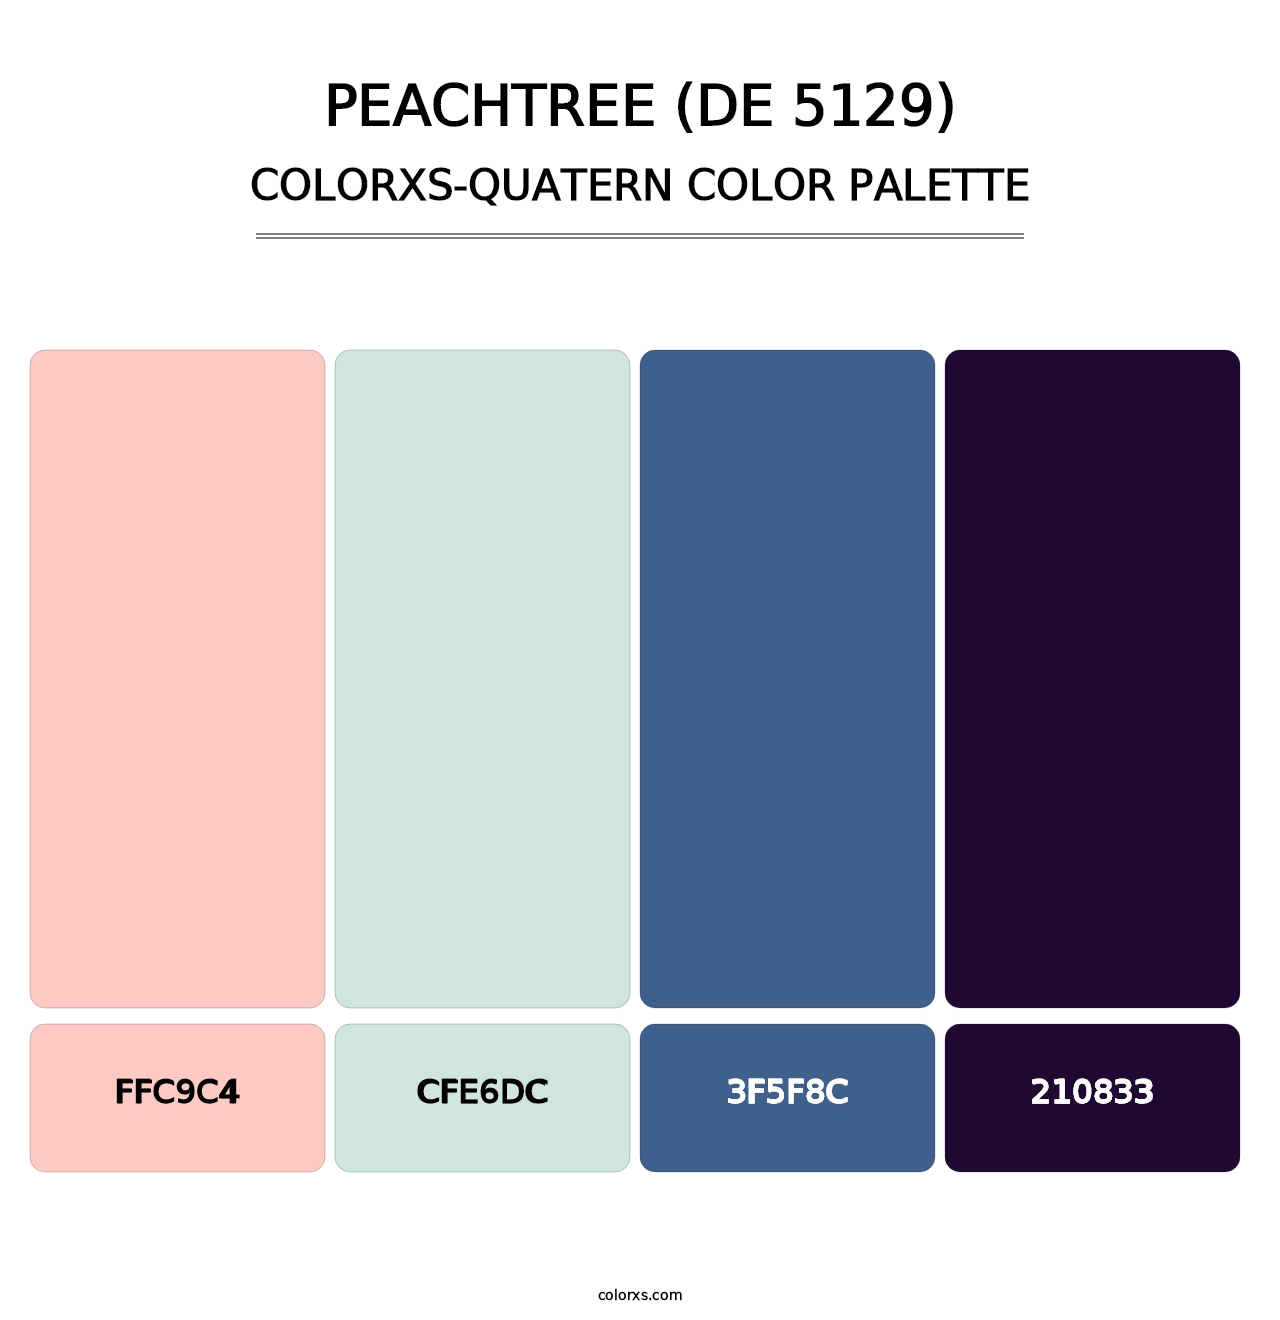 Peachtree (DE 5129) - Colorxs Quatern Palette